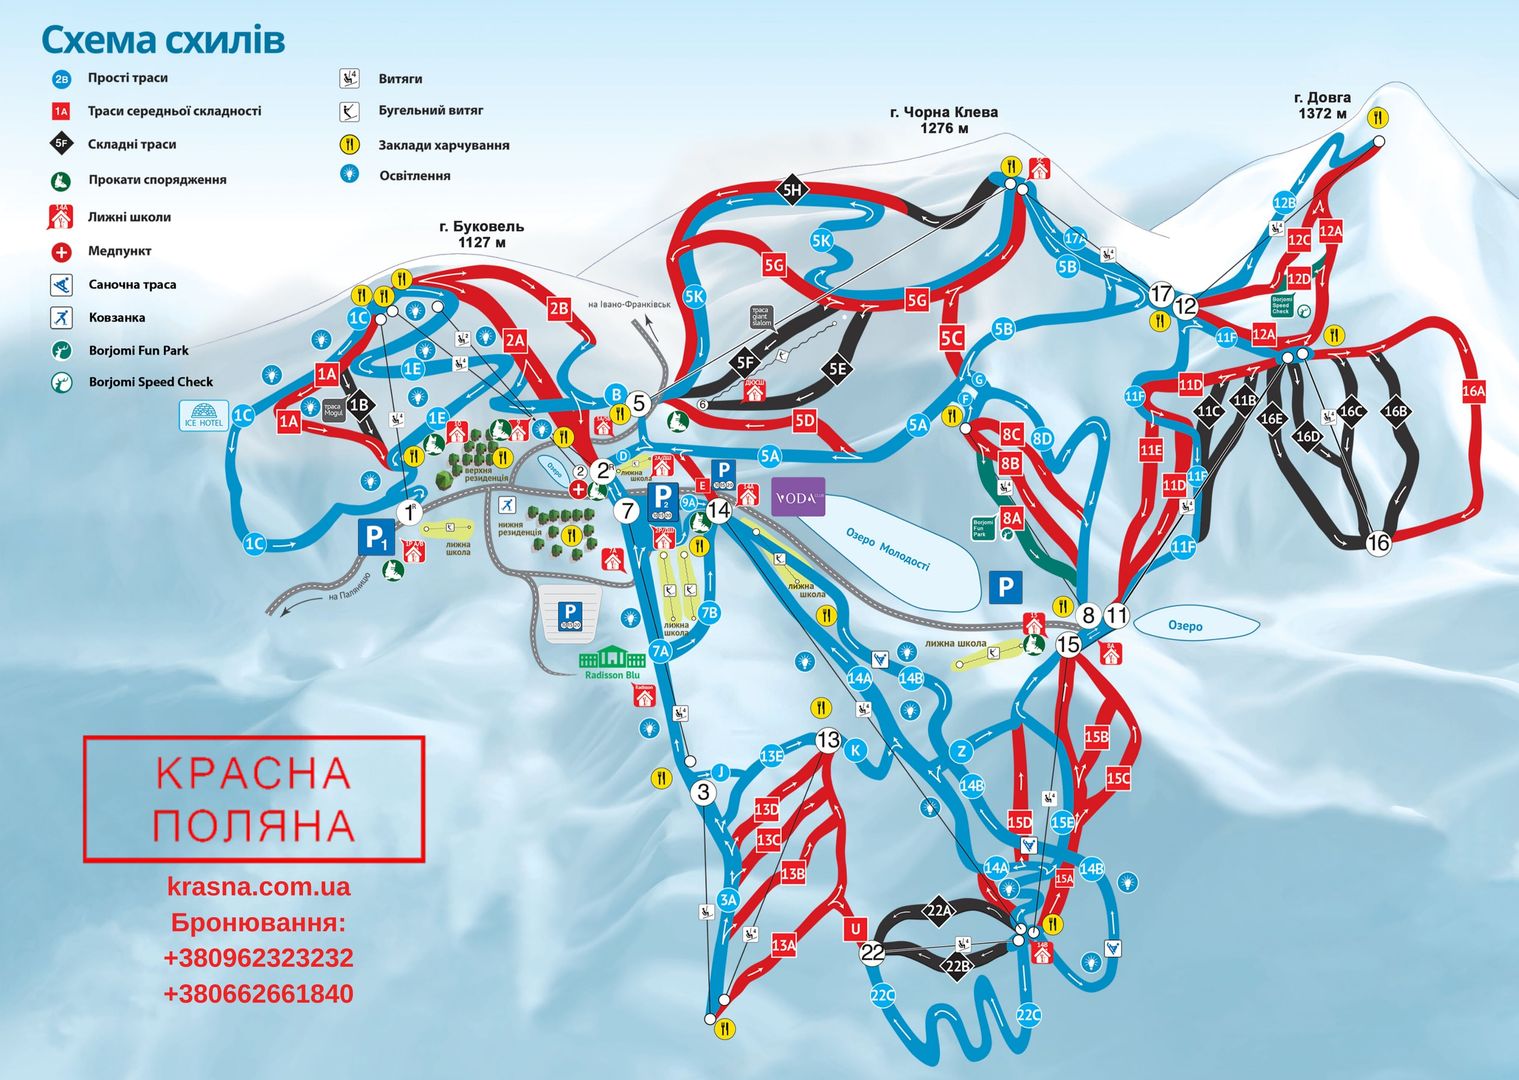 Схема склонов горнолыжного отдыха Буковель